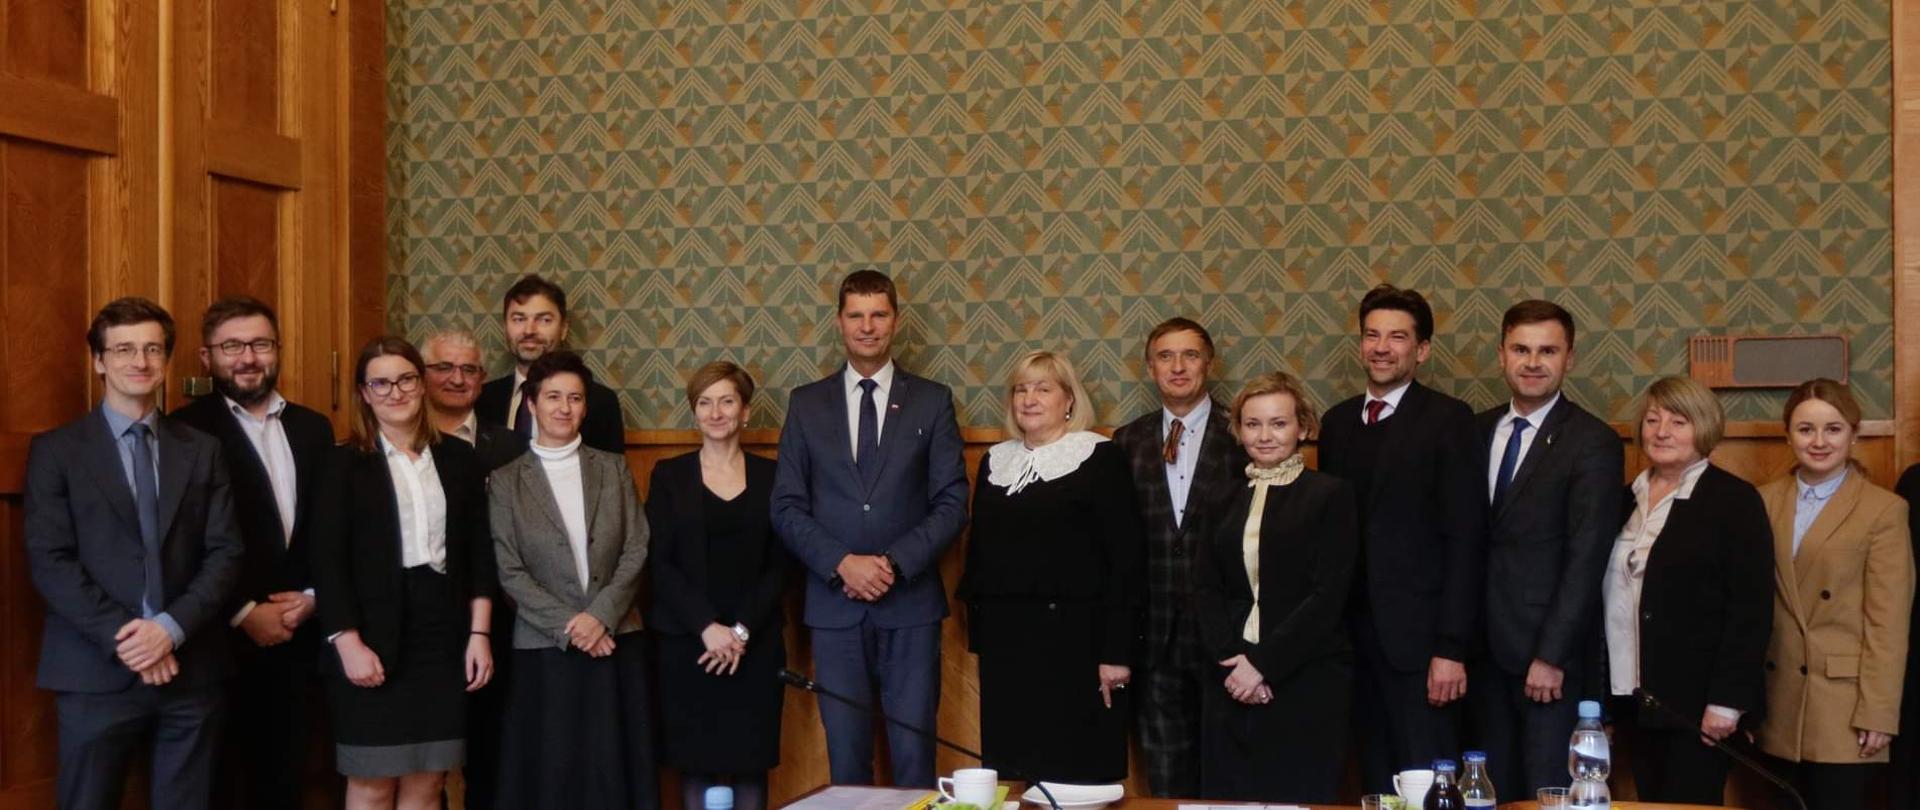 na zdjęciu wszyscy członkowie spotkania na grupowym zdjęciu, po środku minister Piontkowski